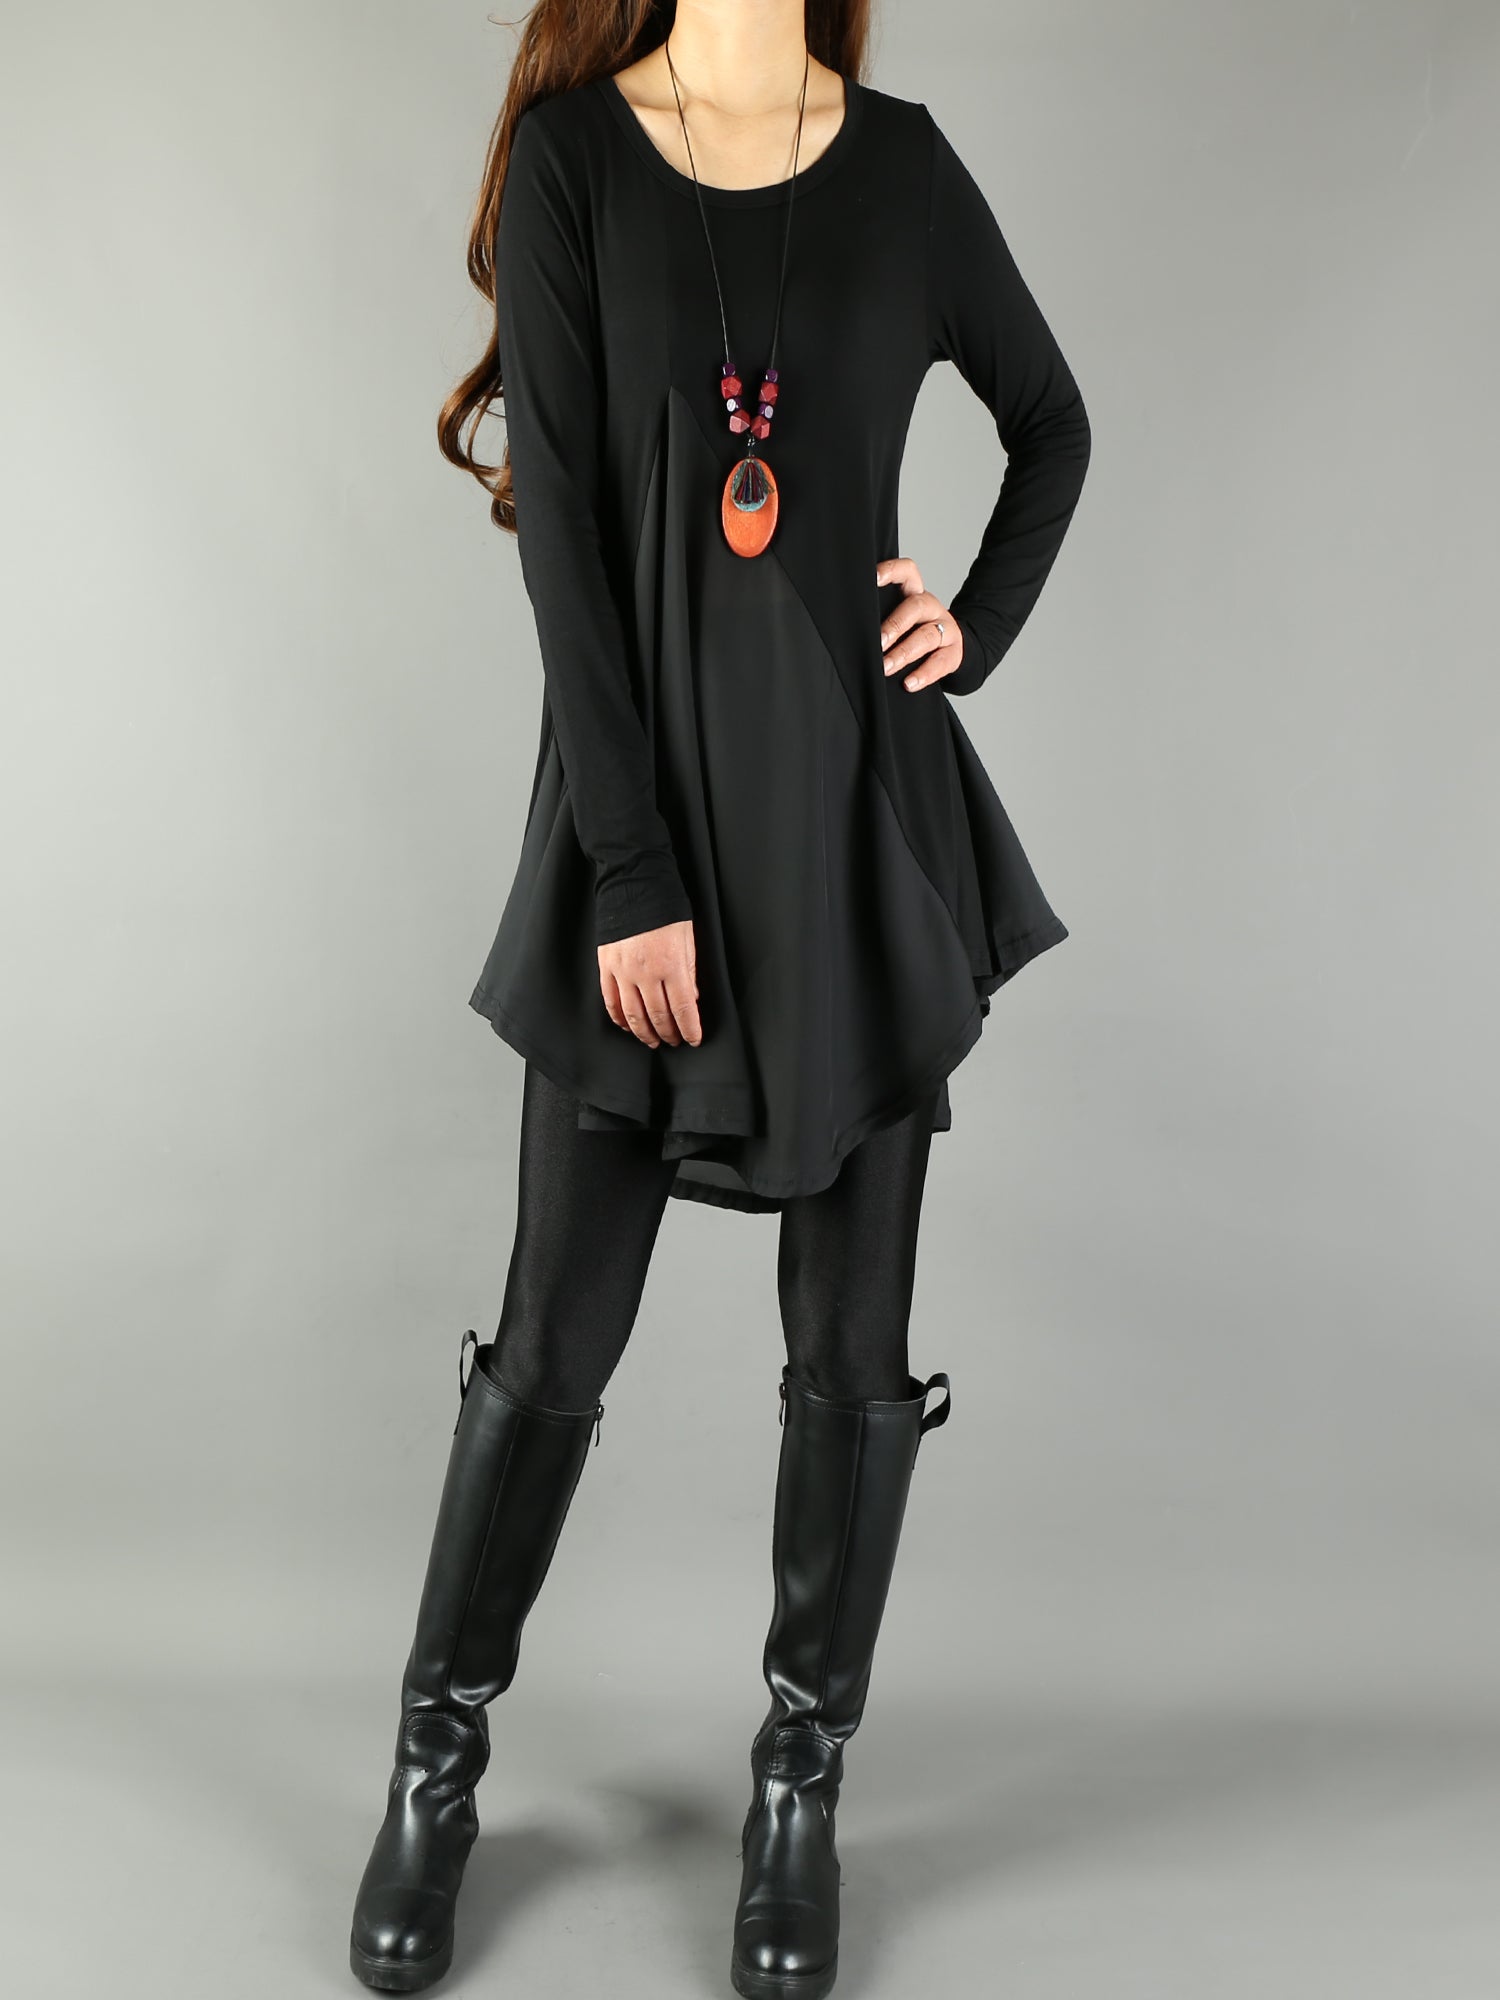 Women's Modal and Chiffon Tunic Dress/Modal Top/Chiffon Tunic for